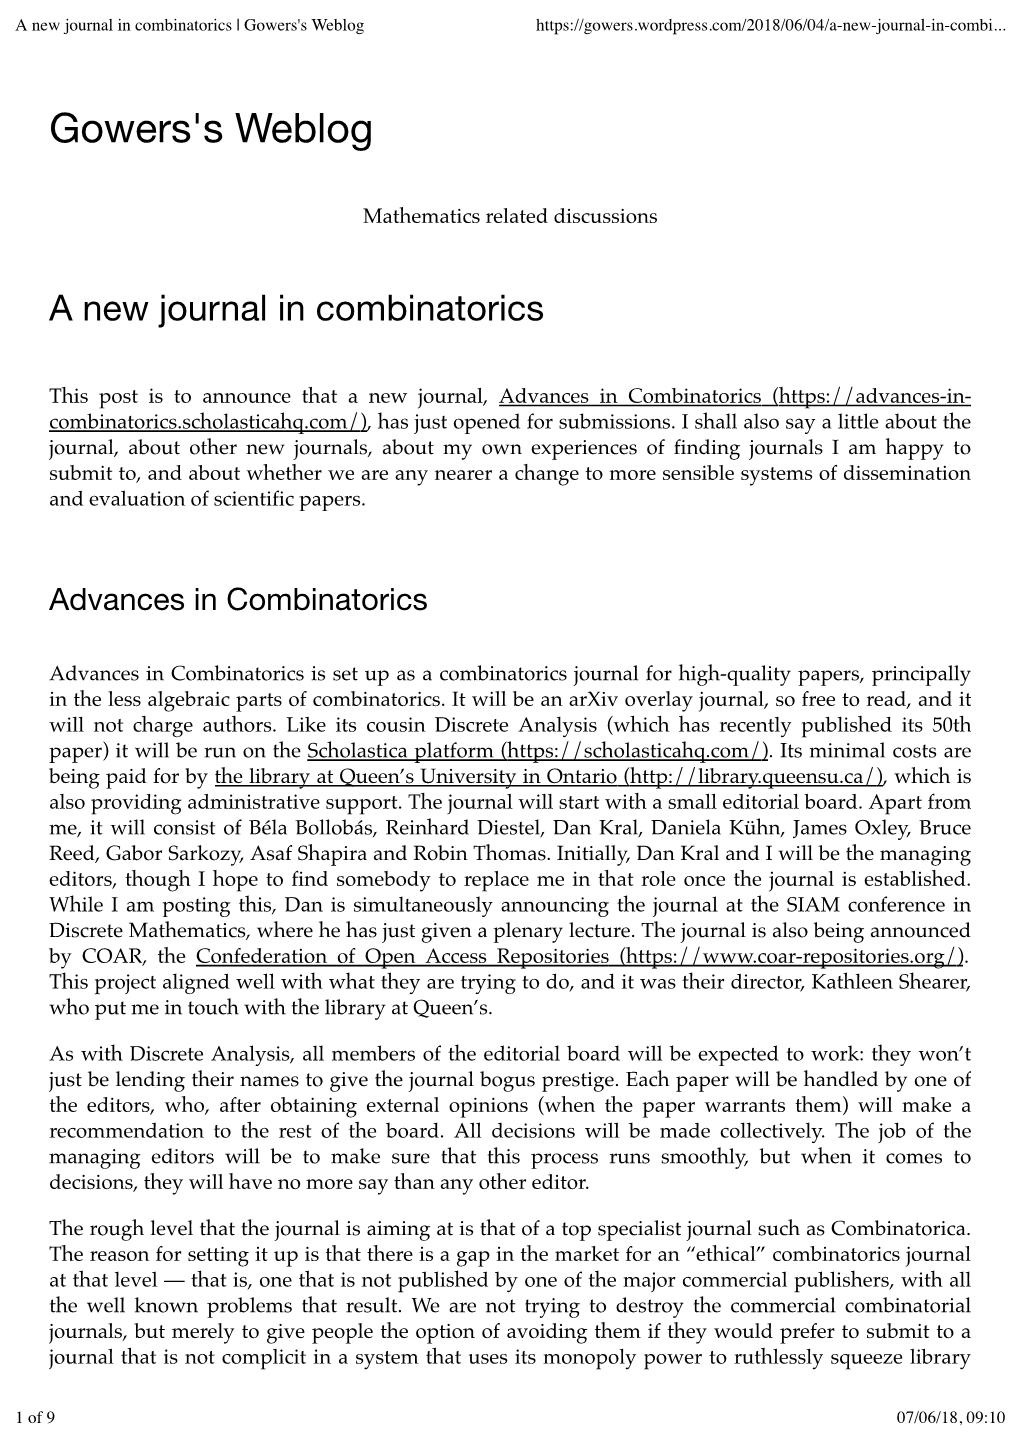 A New Journal in Combinatorics | Gowers's Weblog